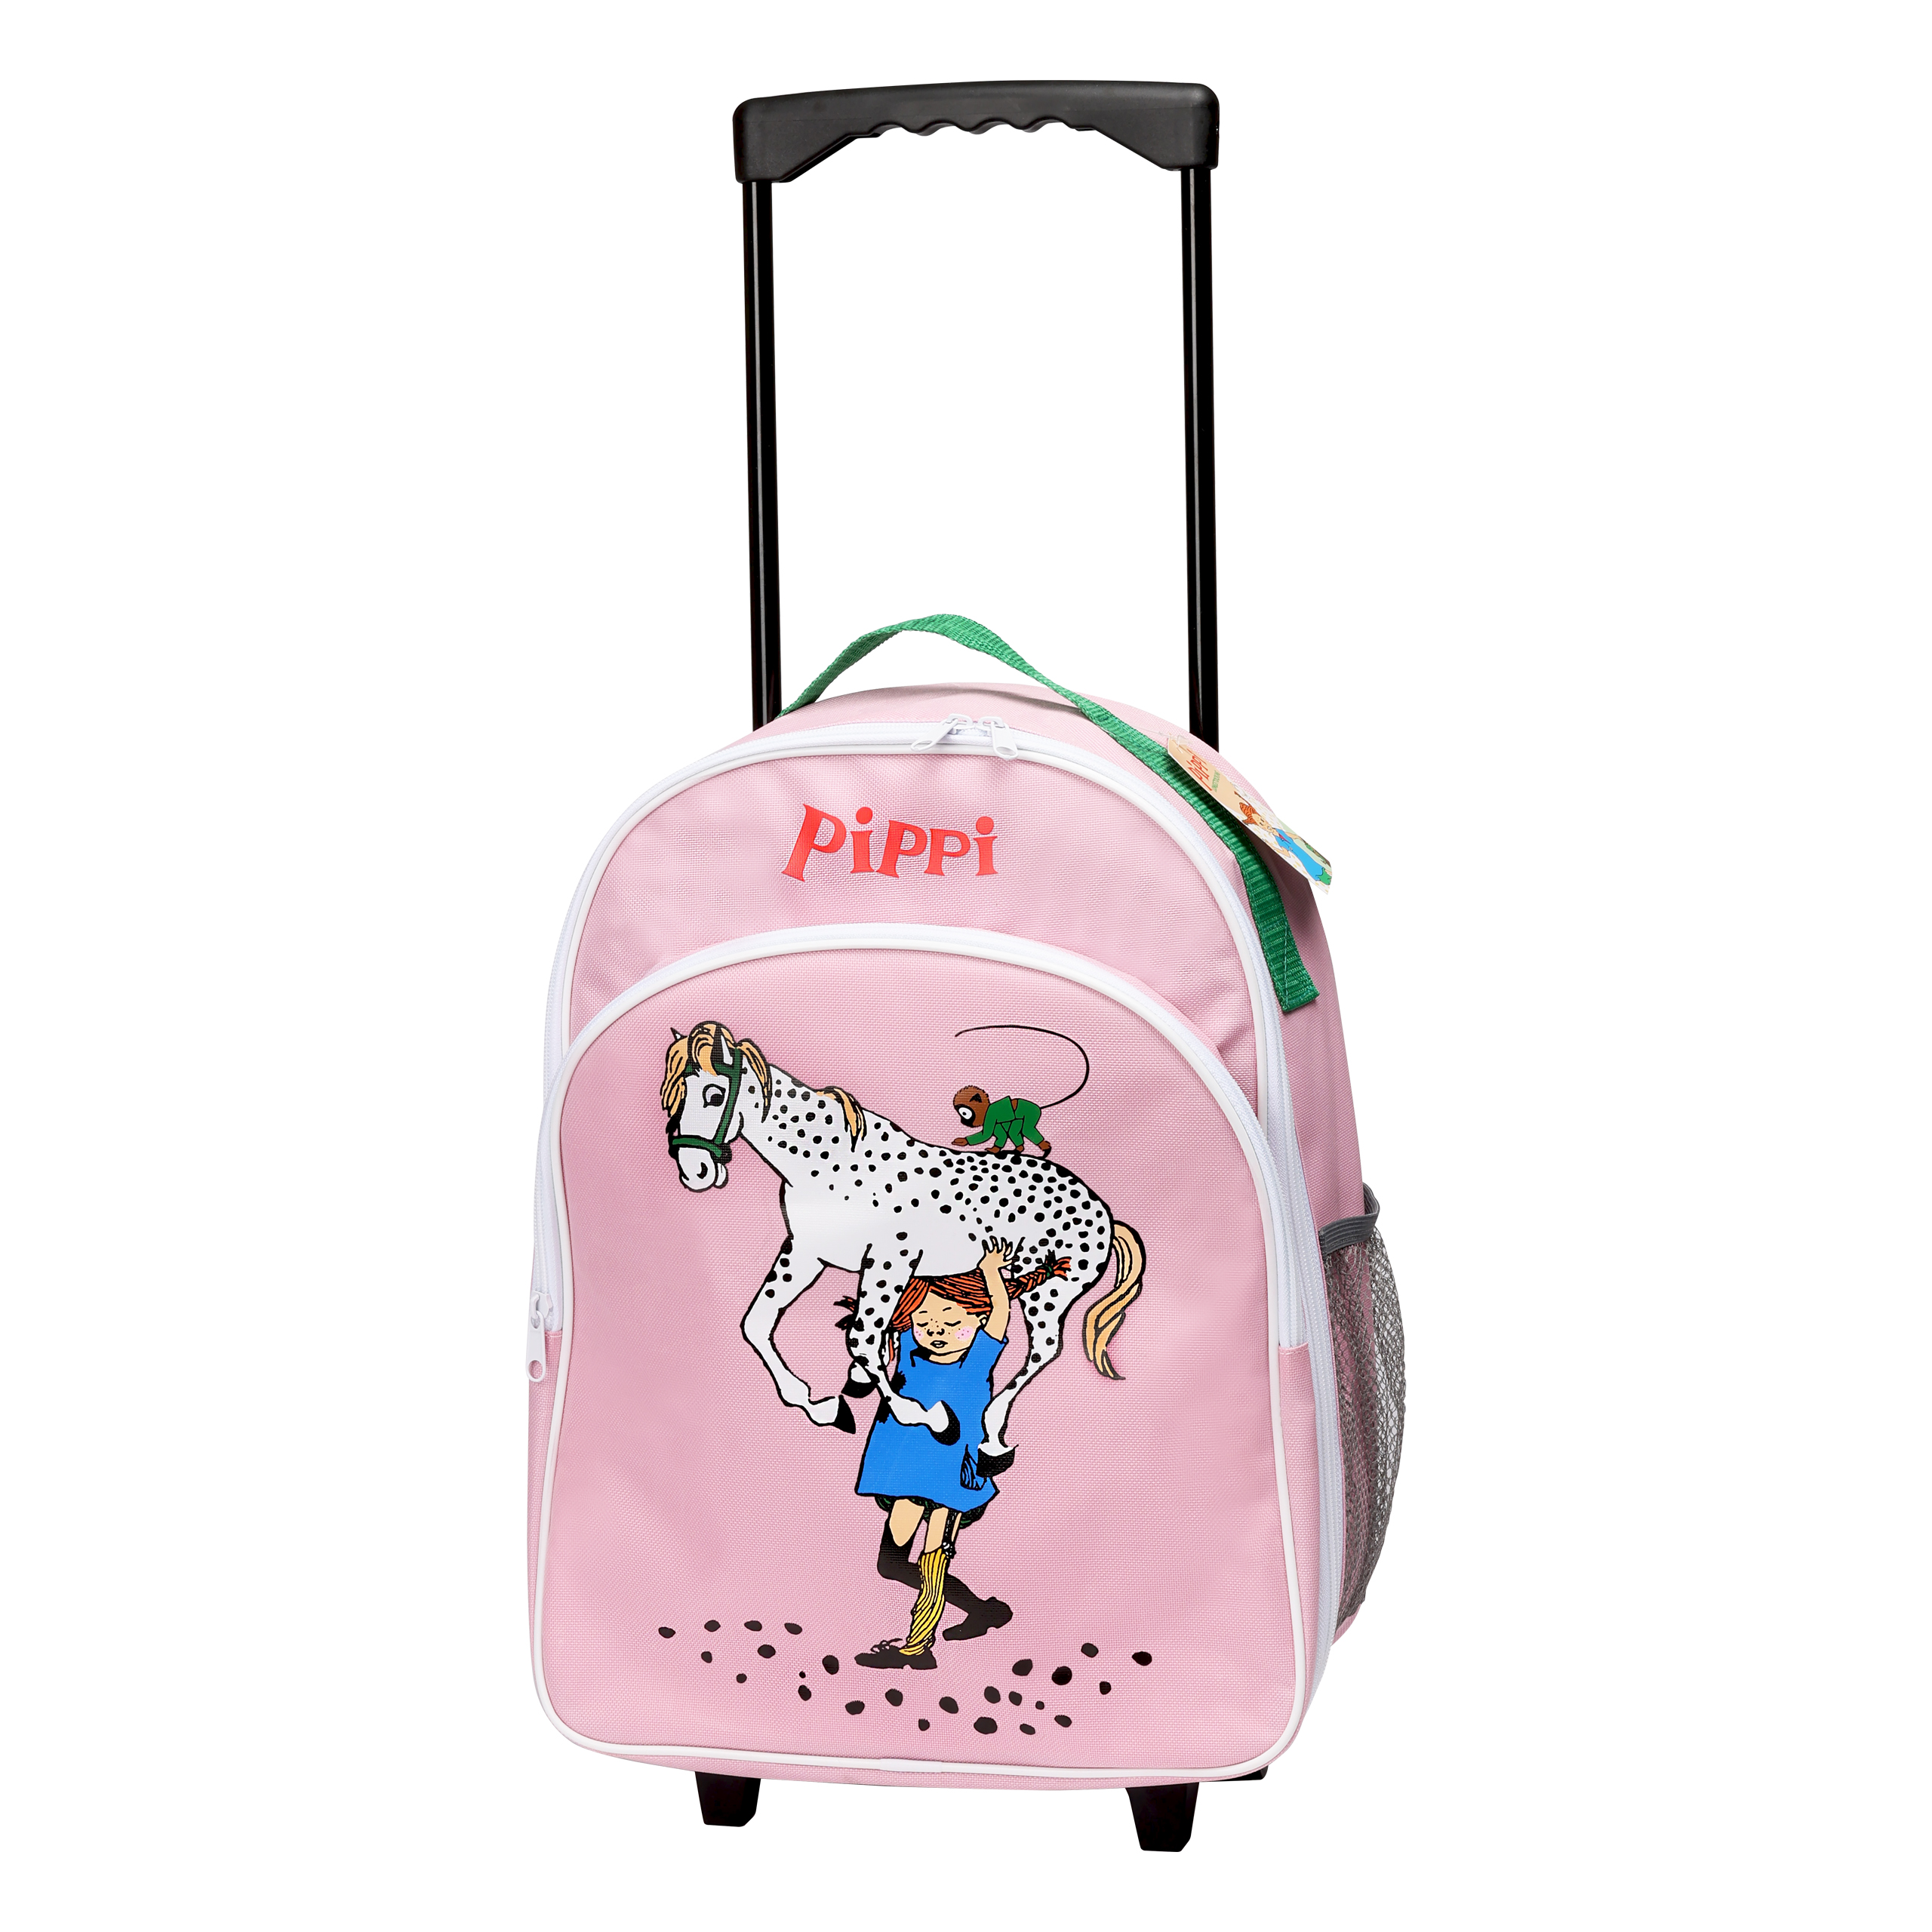 Pippi Långstrump pippi barnväska resväska rosa